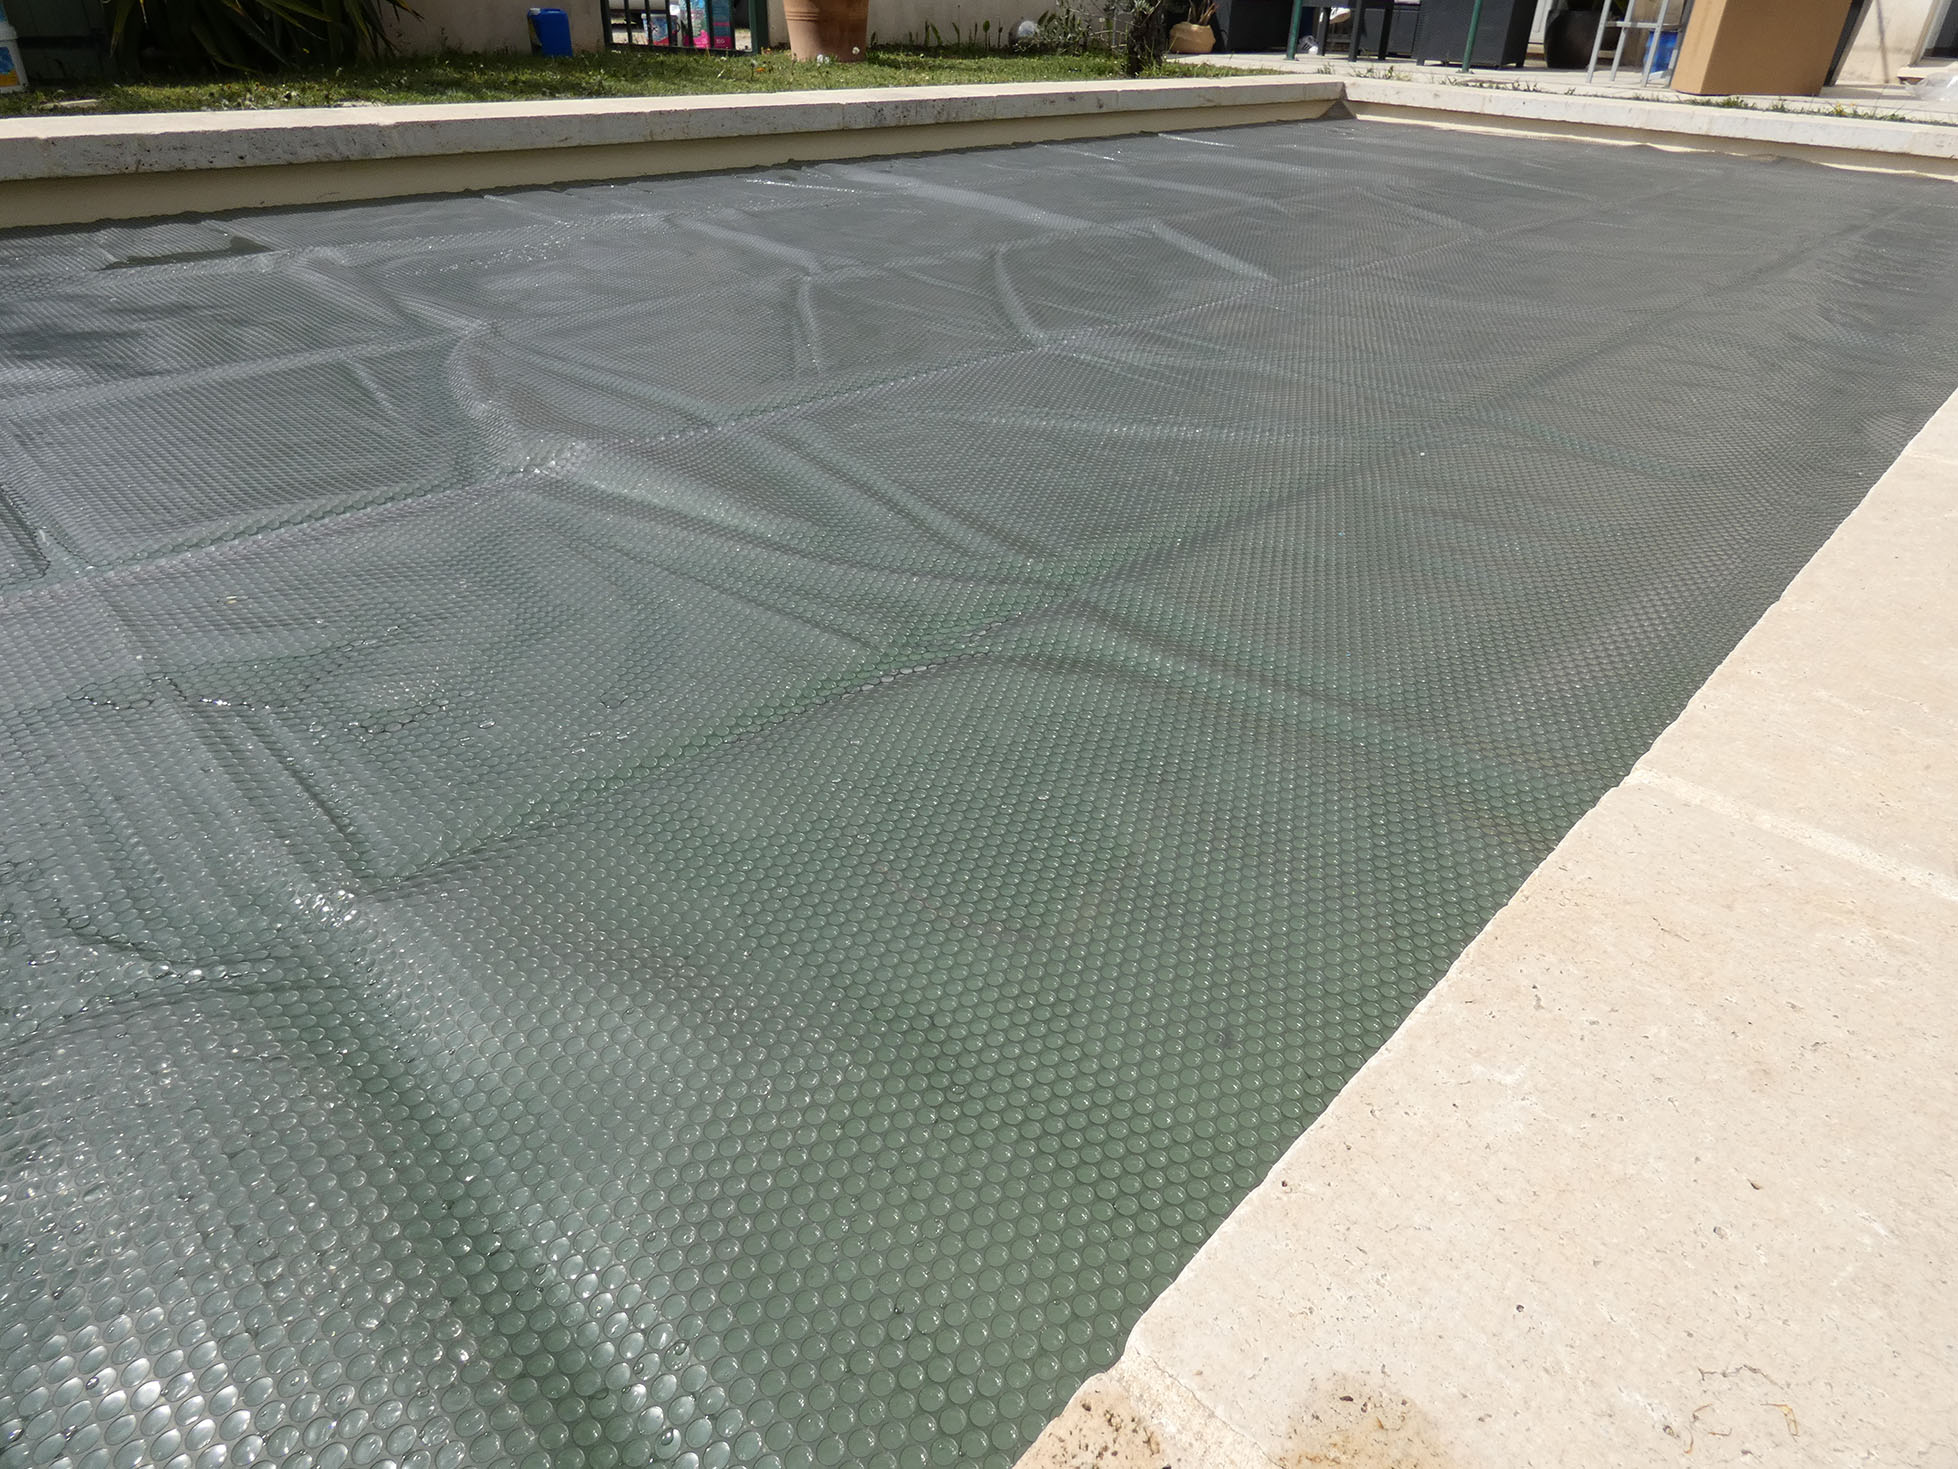 Cape-Couverture de piscine solaire X96 cm, imperméable, protection